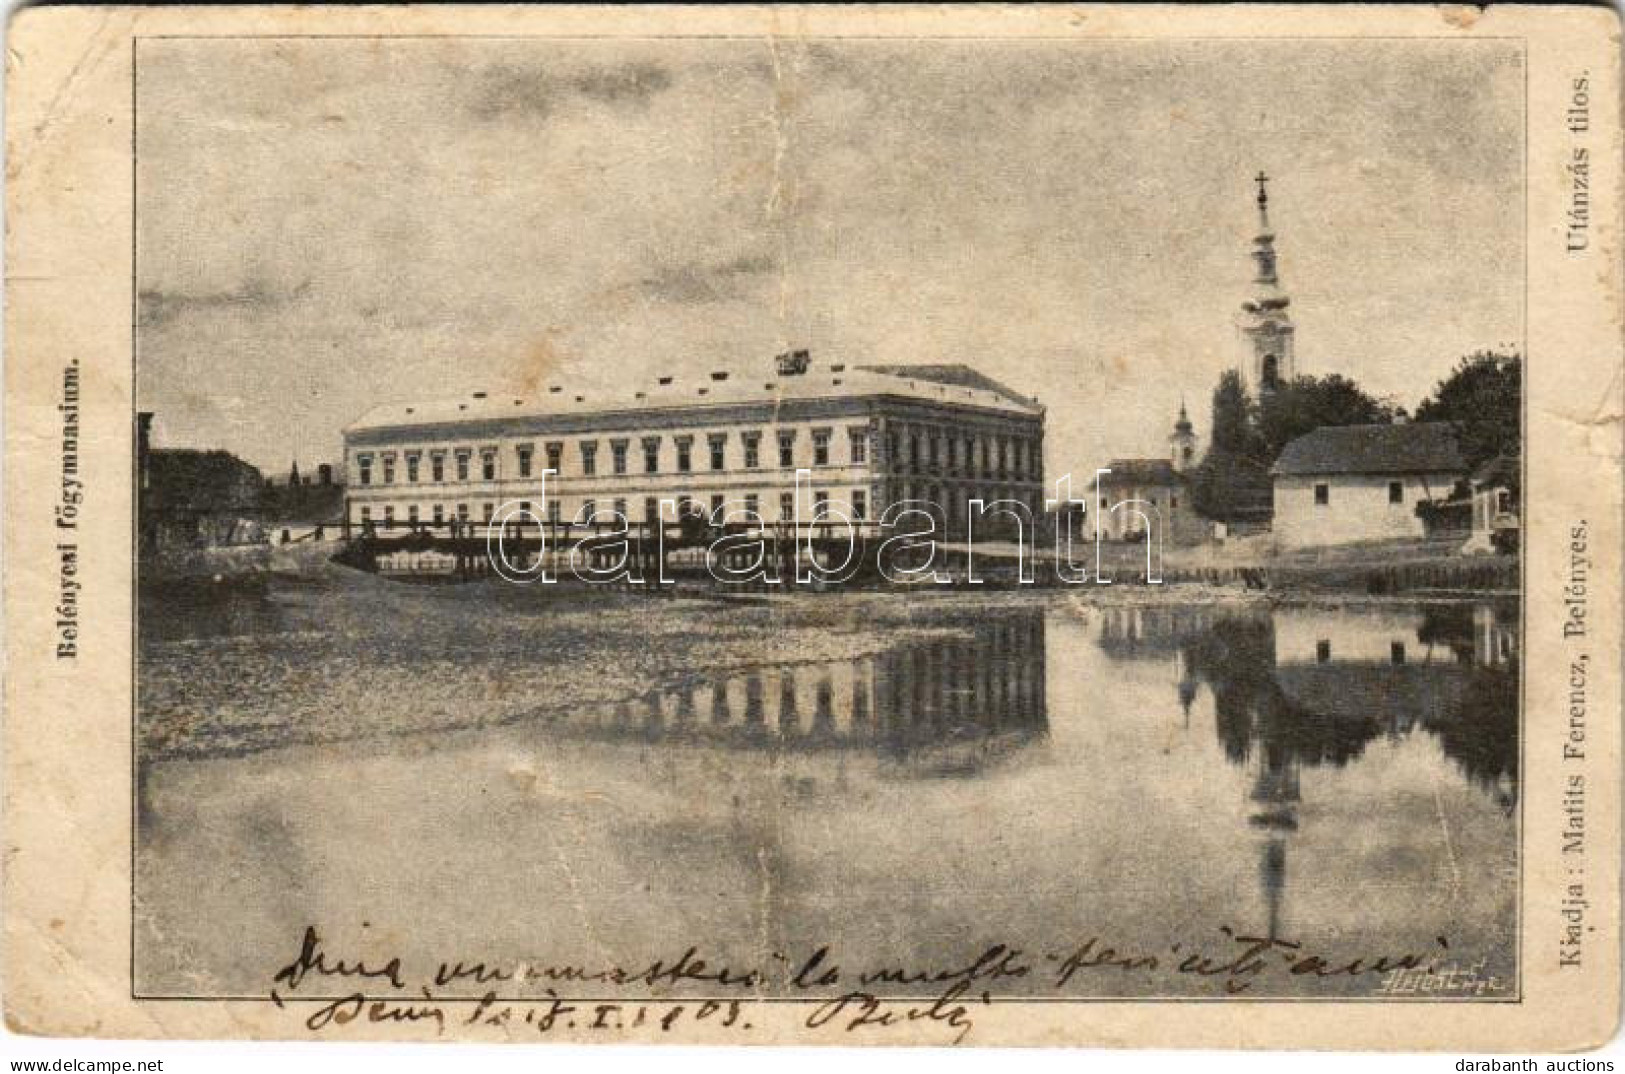 * T4 1903 Belényes, Beius; Főgimnázium. Matits Ferenc Kiadása / School (fa) - Ohne Zuordnung